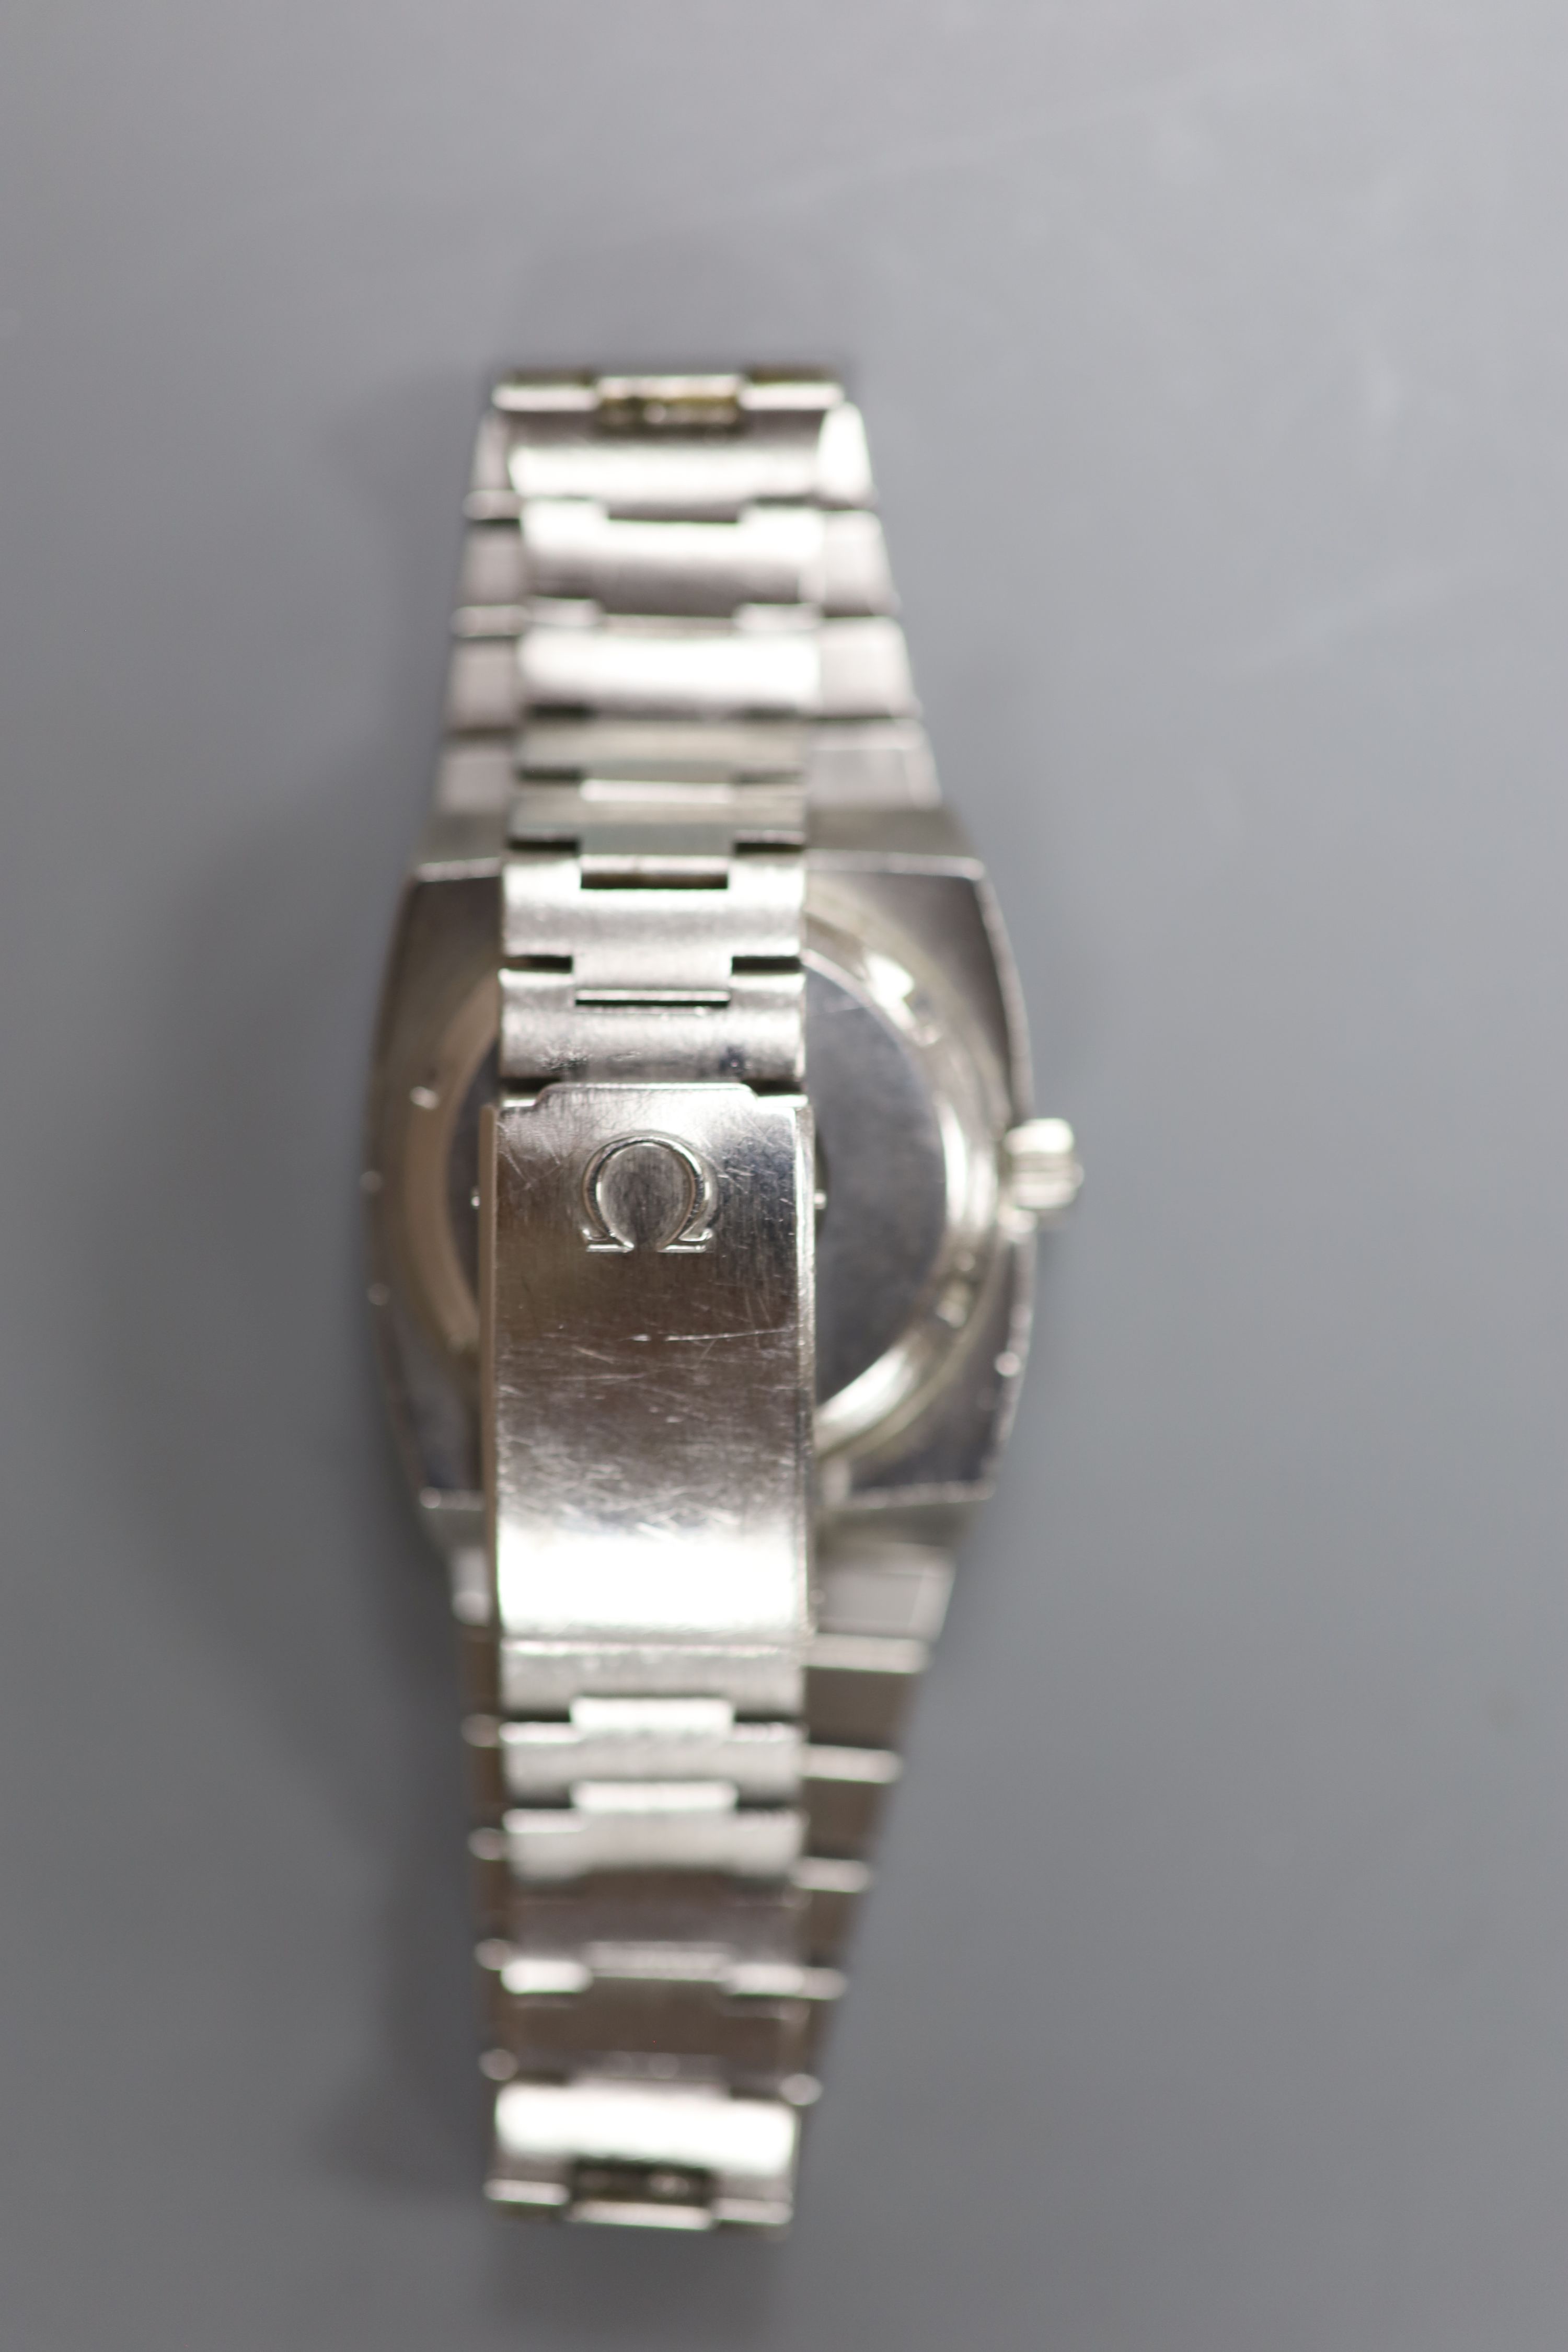 A gentleman's stainless steel Omega Megaquartz 32KHz wrist watch, on stainless steel Omega bracelet, case diameter 31mm.